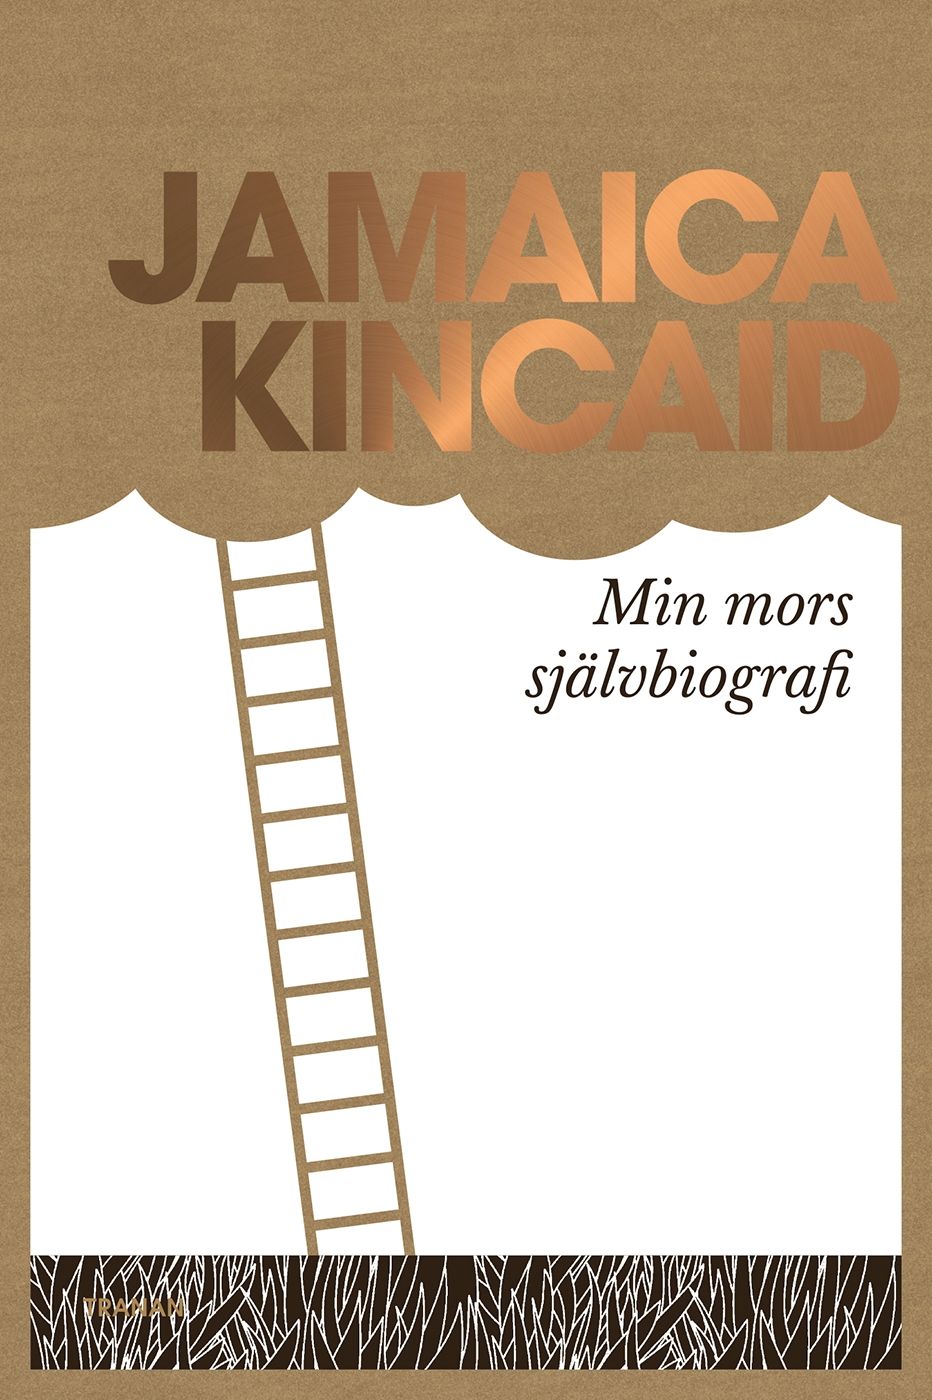 Min mors självbiografi, e-bok av Jamaica Kincaid